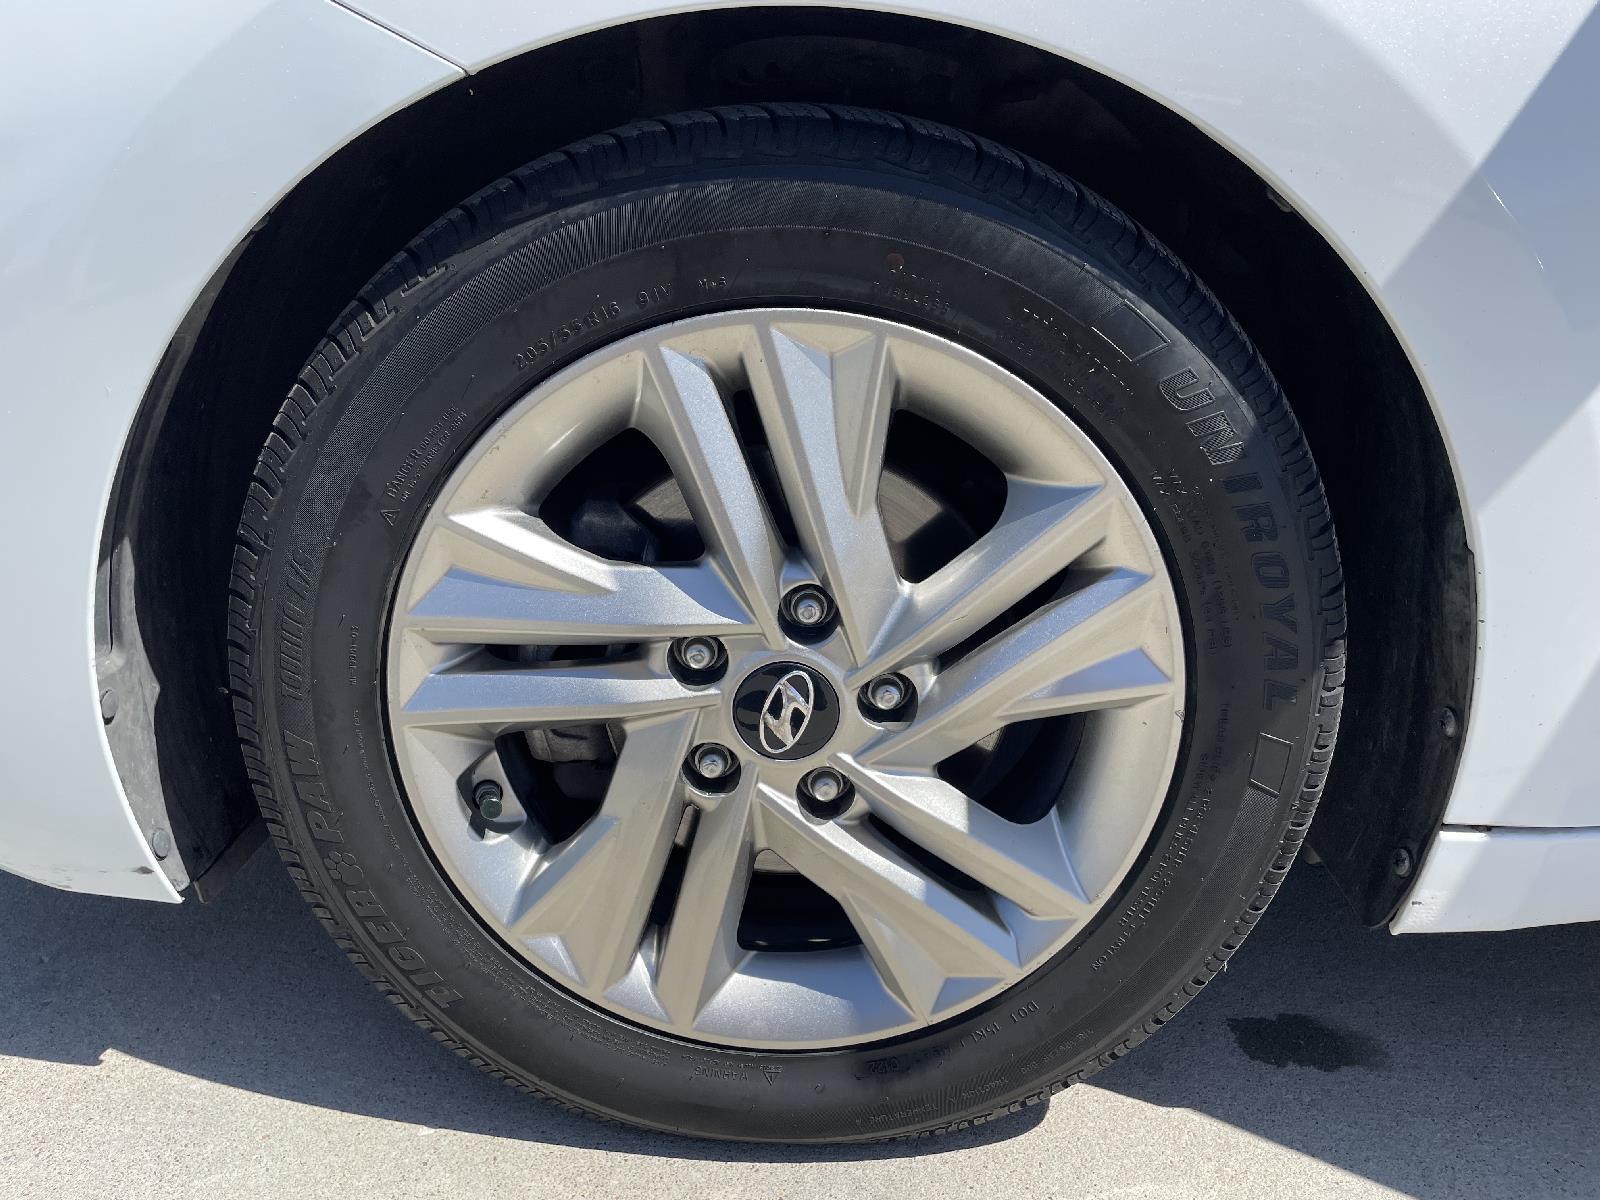 Used 2019 Hyundai Elantra SEL Sedan for sale in Lincoln NE